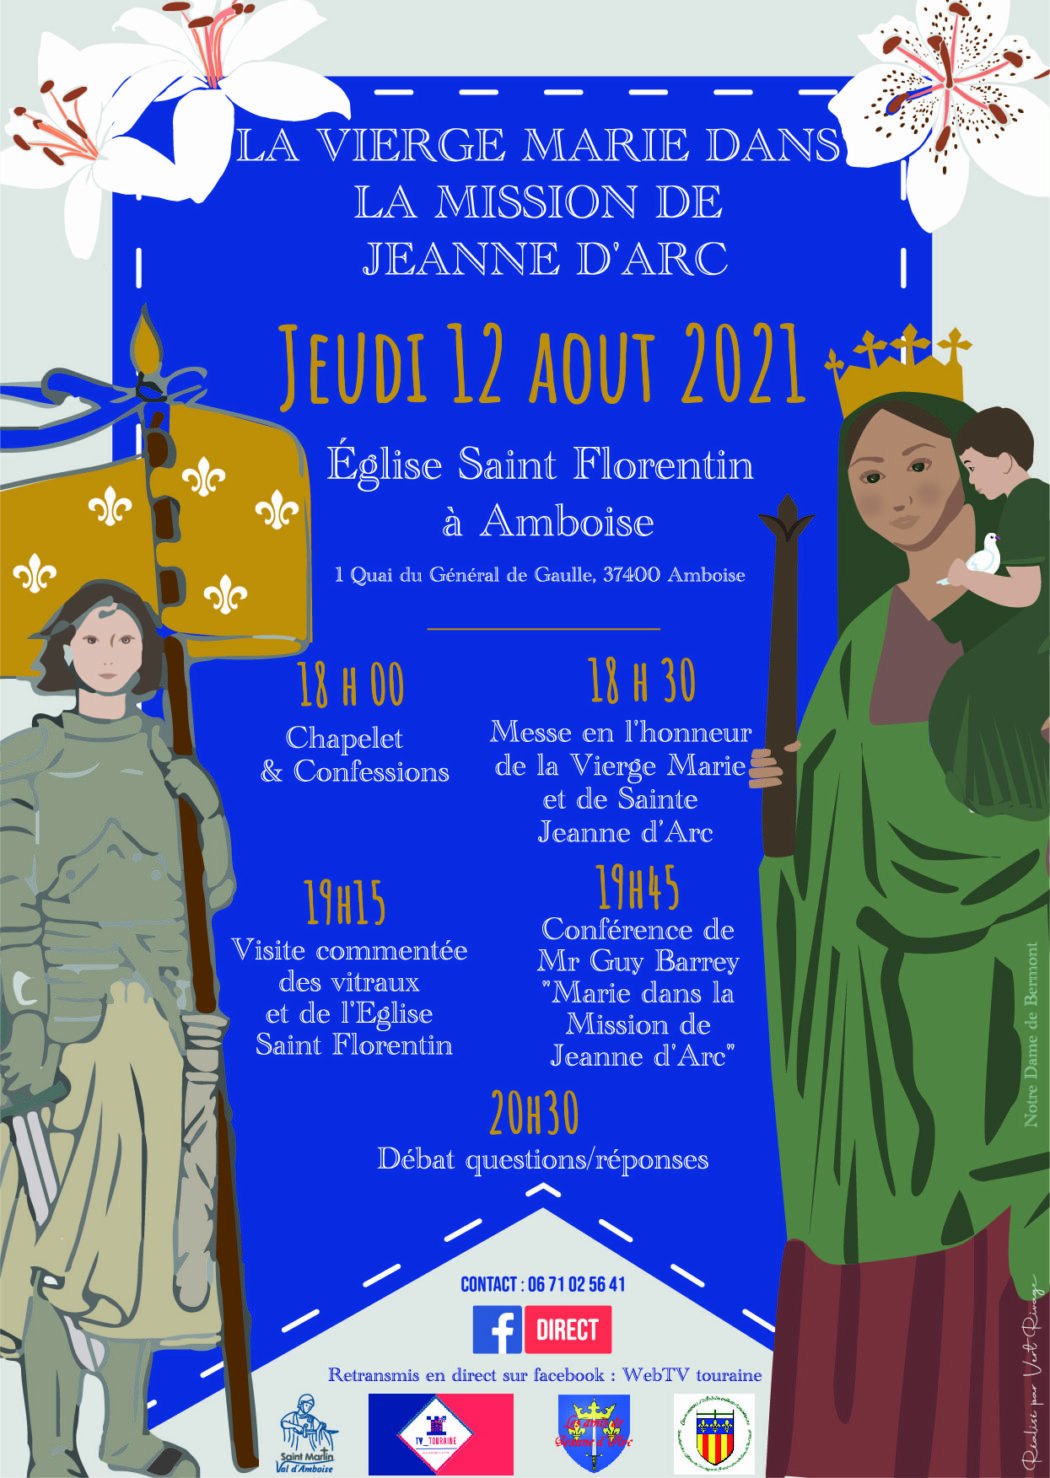 La Vierge Marie dans la mission de Jeanne d’Arc : le 12 août à Amboise